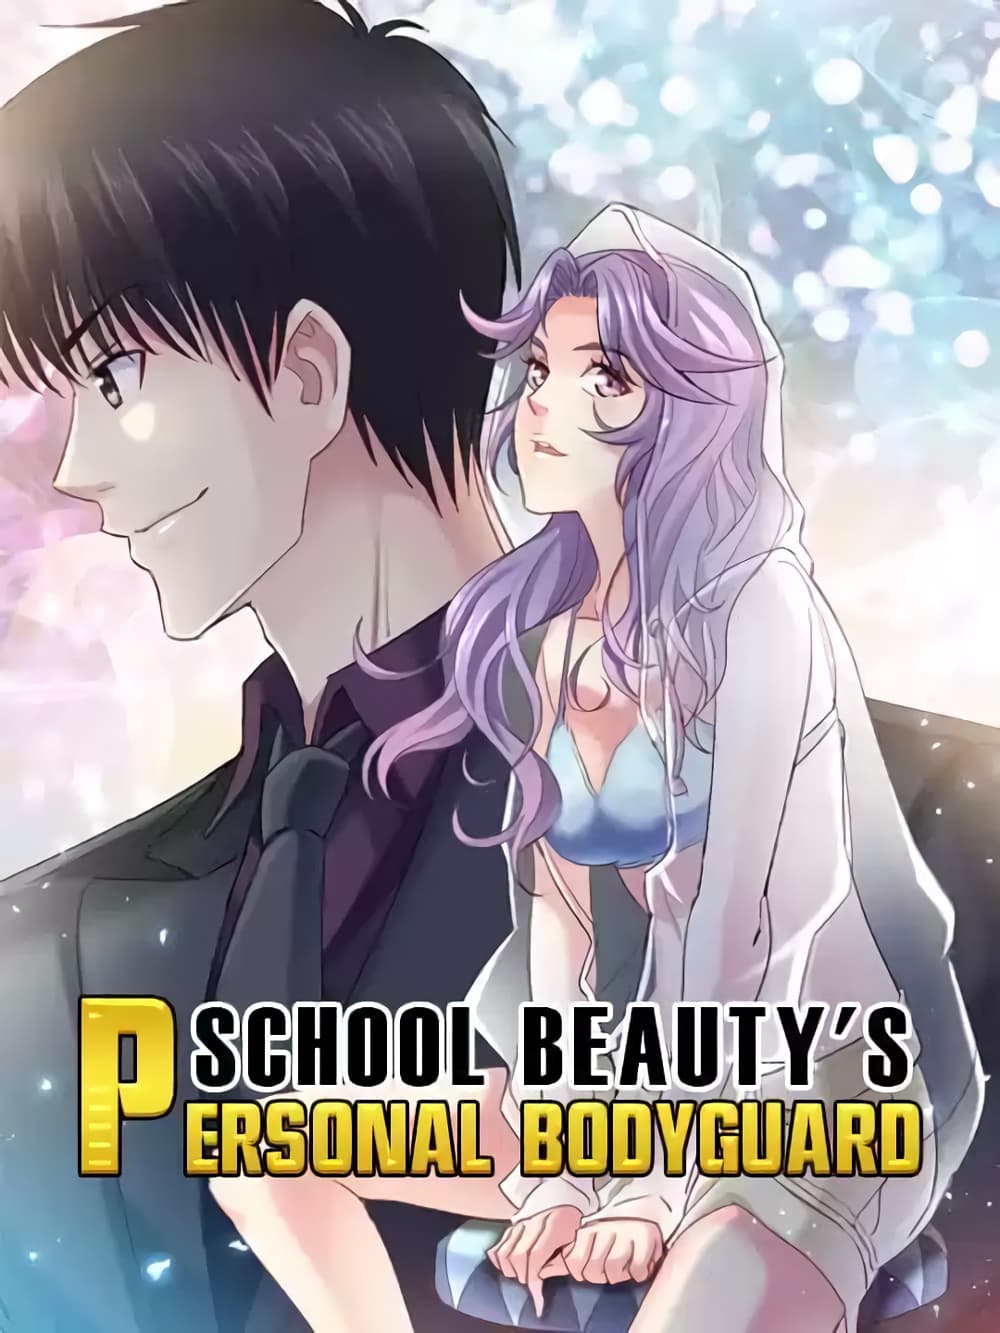 School Beauty's Bodyguard 289 (1)